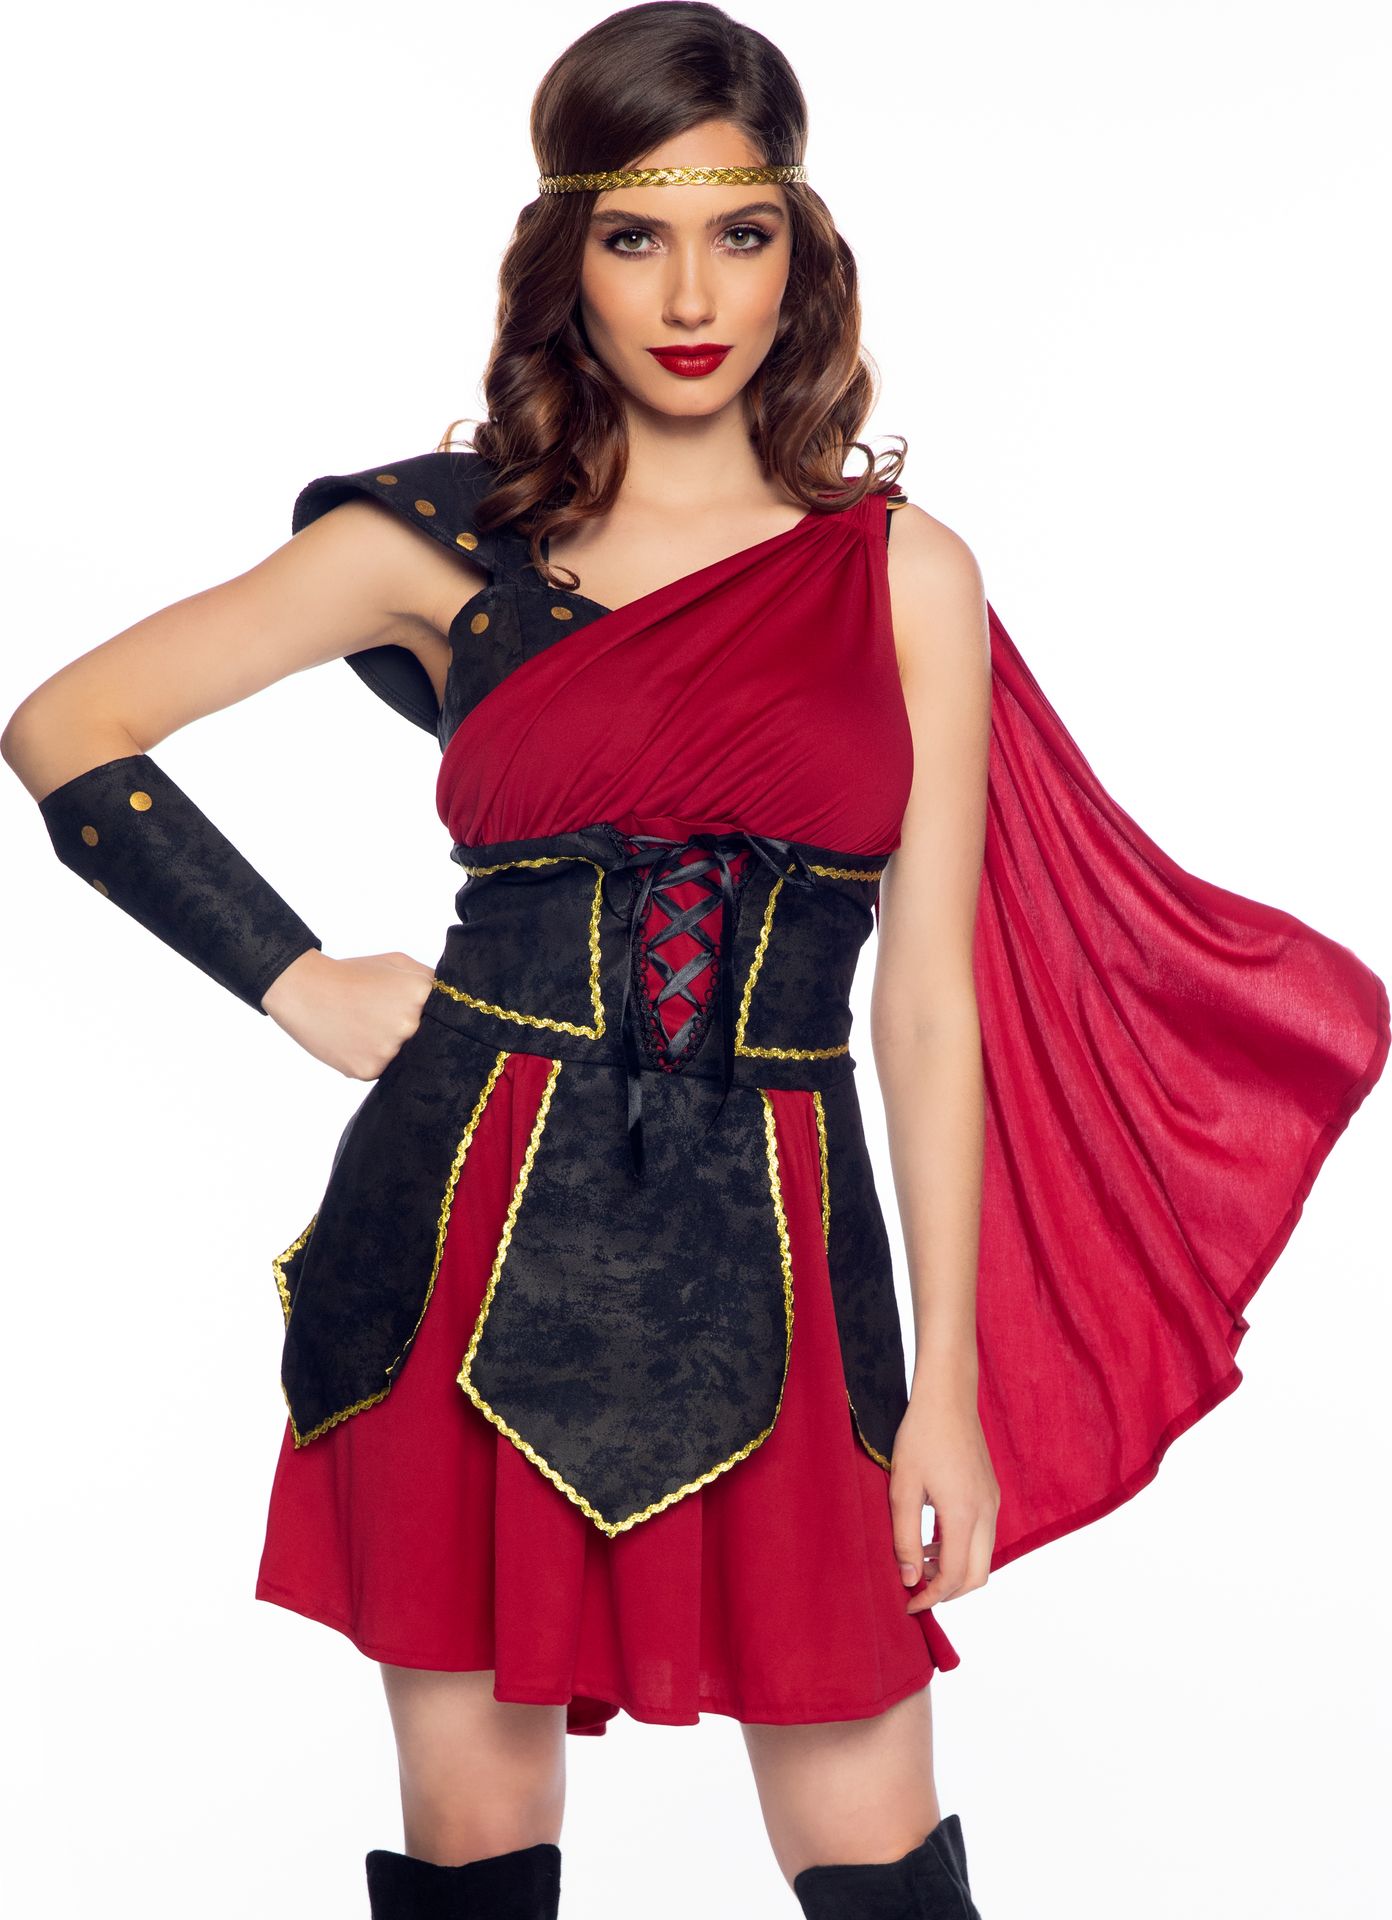 Trojaanse strijder dames jurk